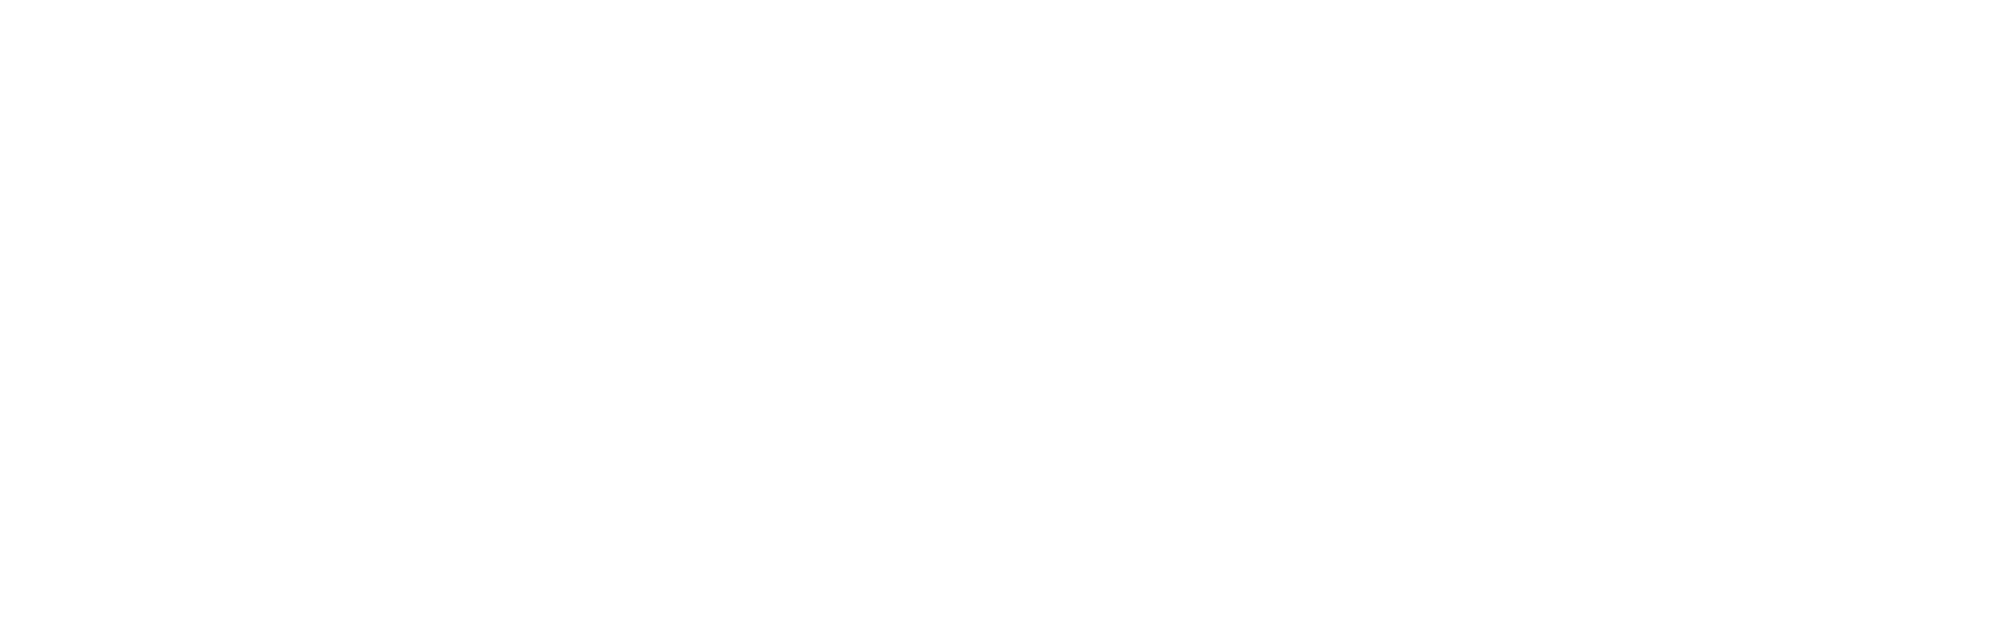 Leather harmonica - Premium handmade leather goods